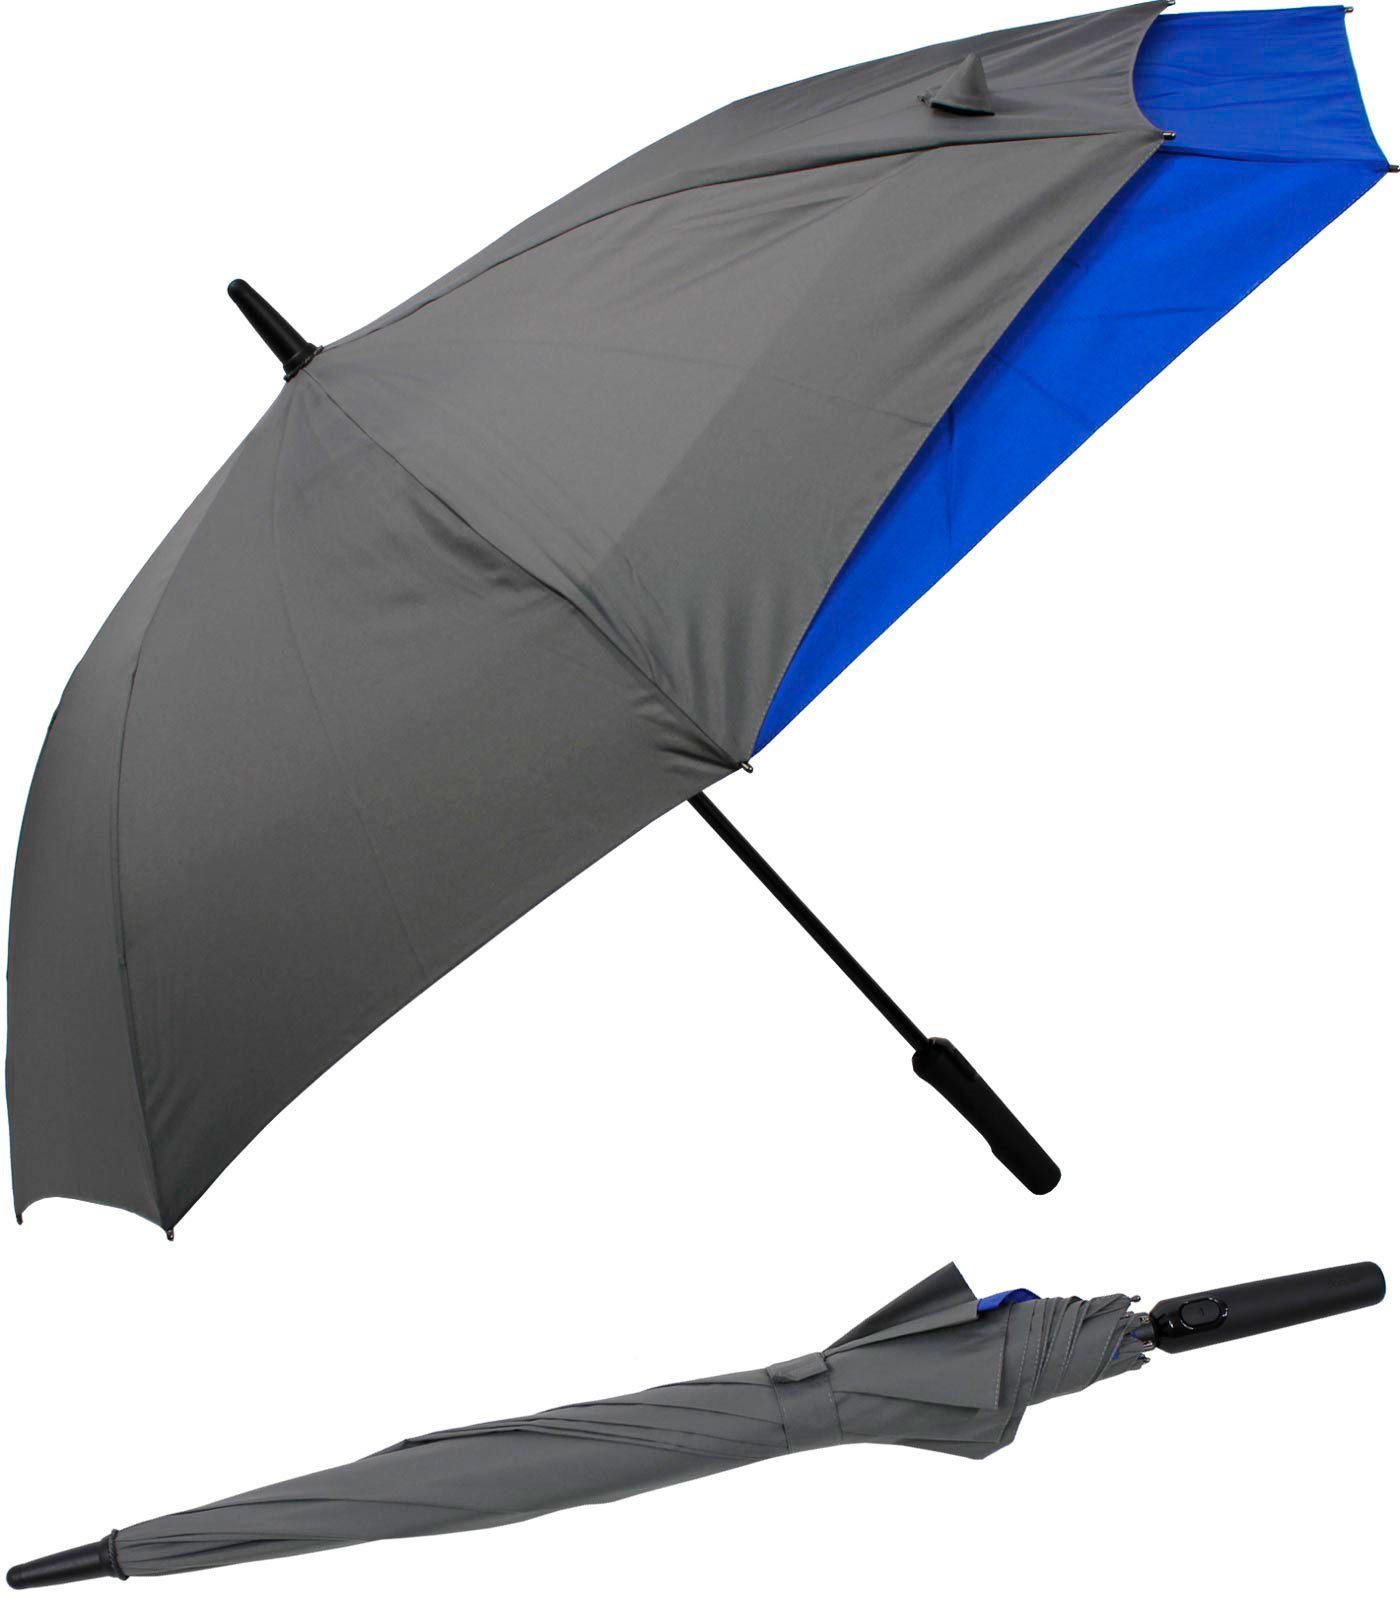 doppler® Langregenschirm Fiberglas mit Auf-Automatik - Move to XL, vergrößert sich beim Öffnen für mehr Schutz vor Regen grau-blau